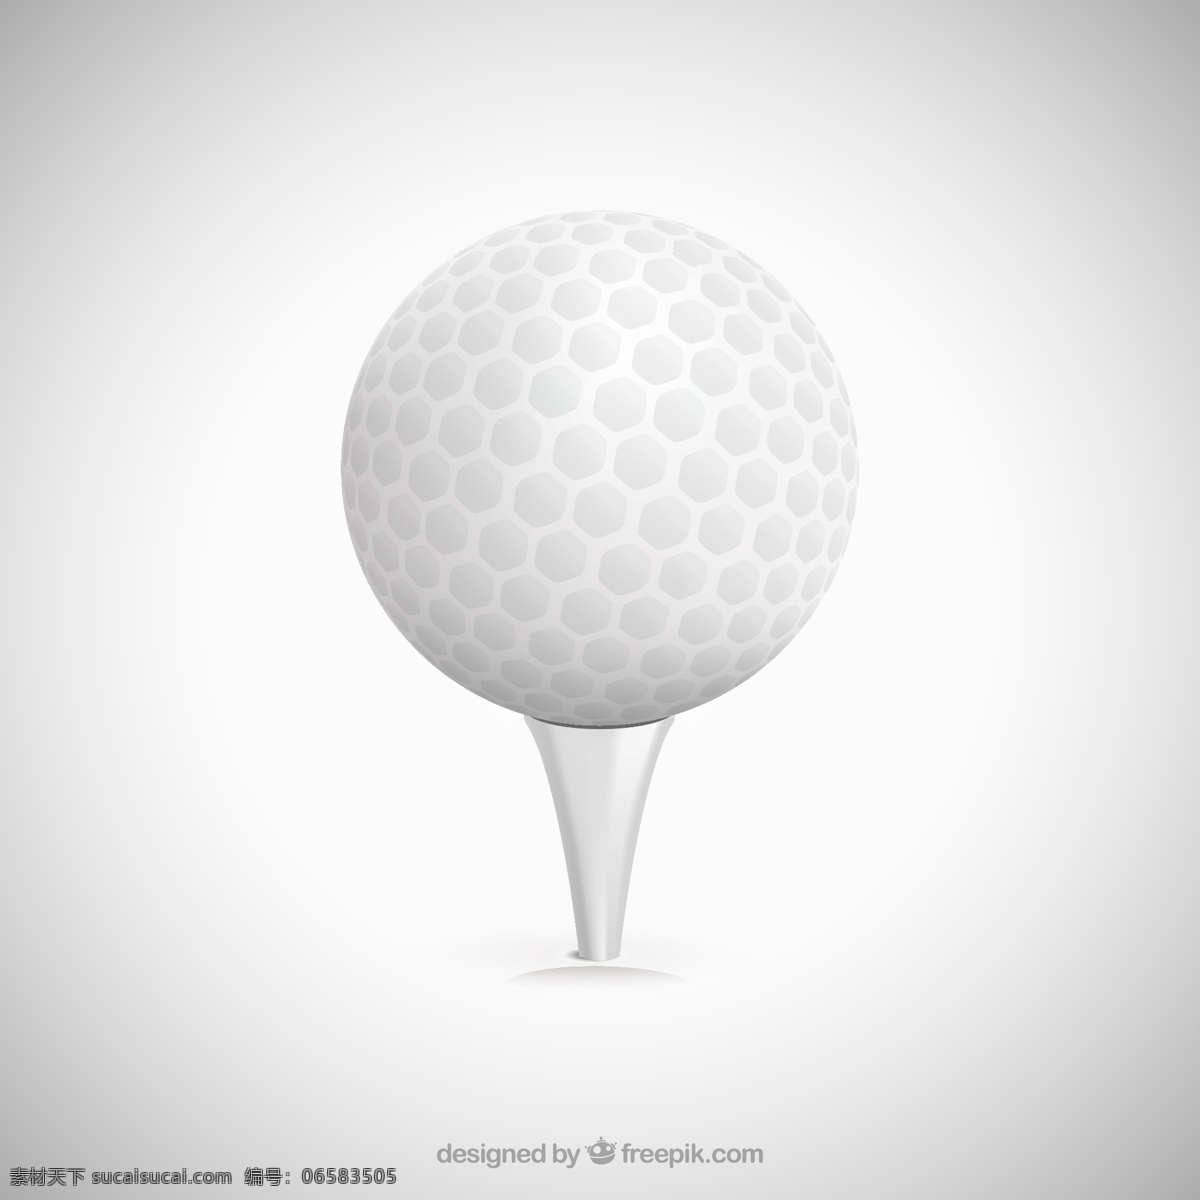 白色高尔夫球 矢量 高尔夫 高尔夫球 体育 球具 矢量图 ai格式